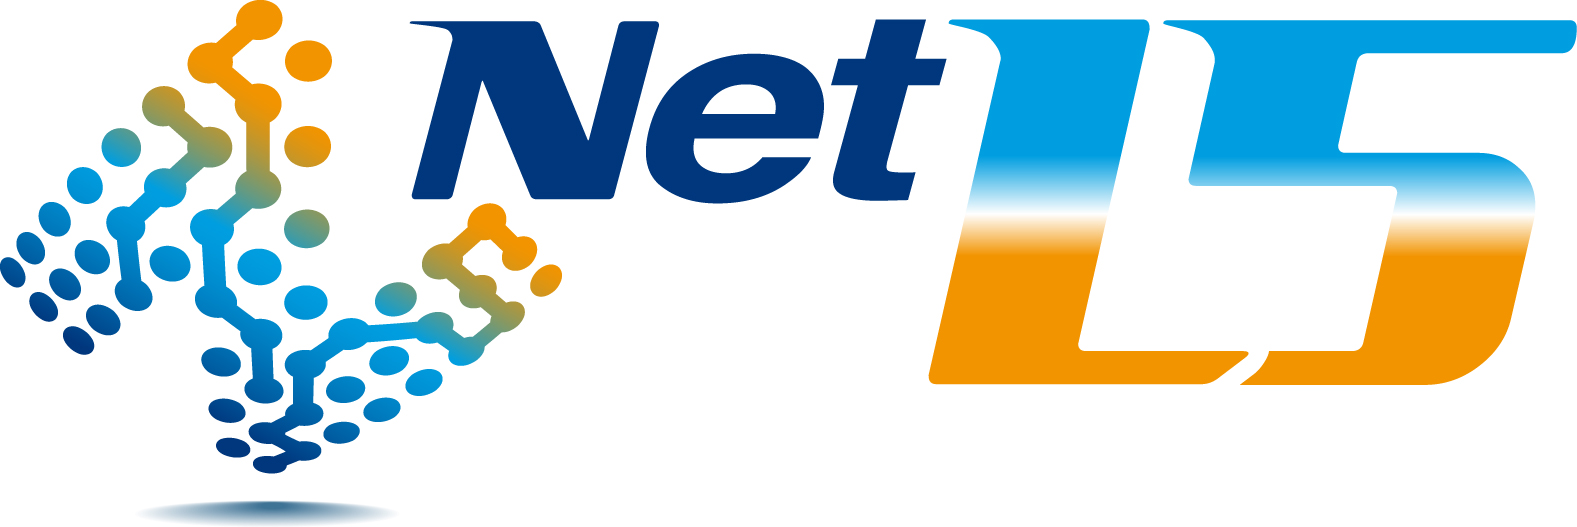 Net L5